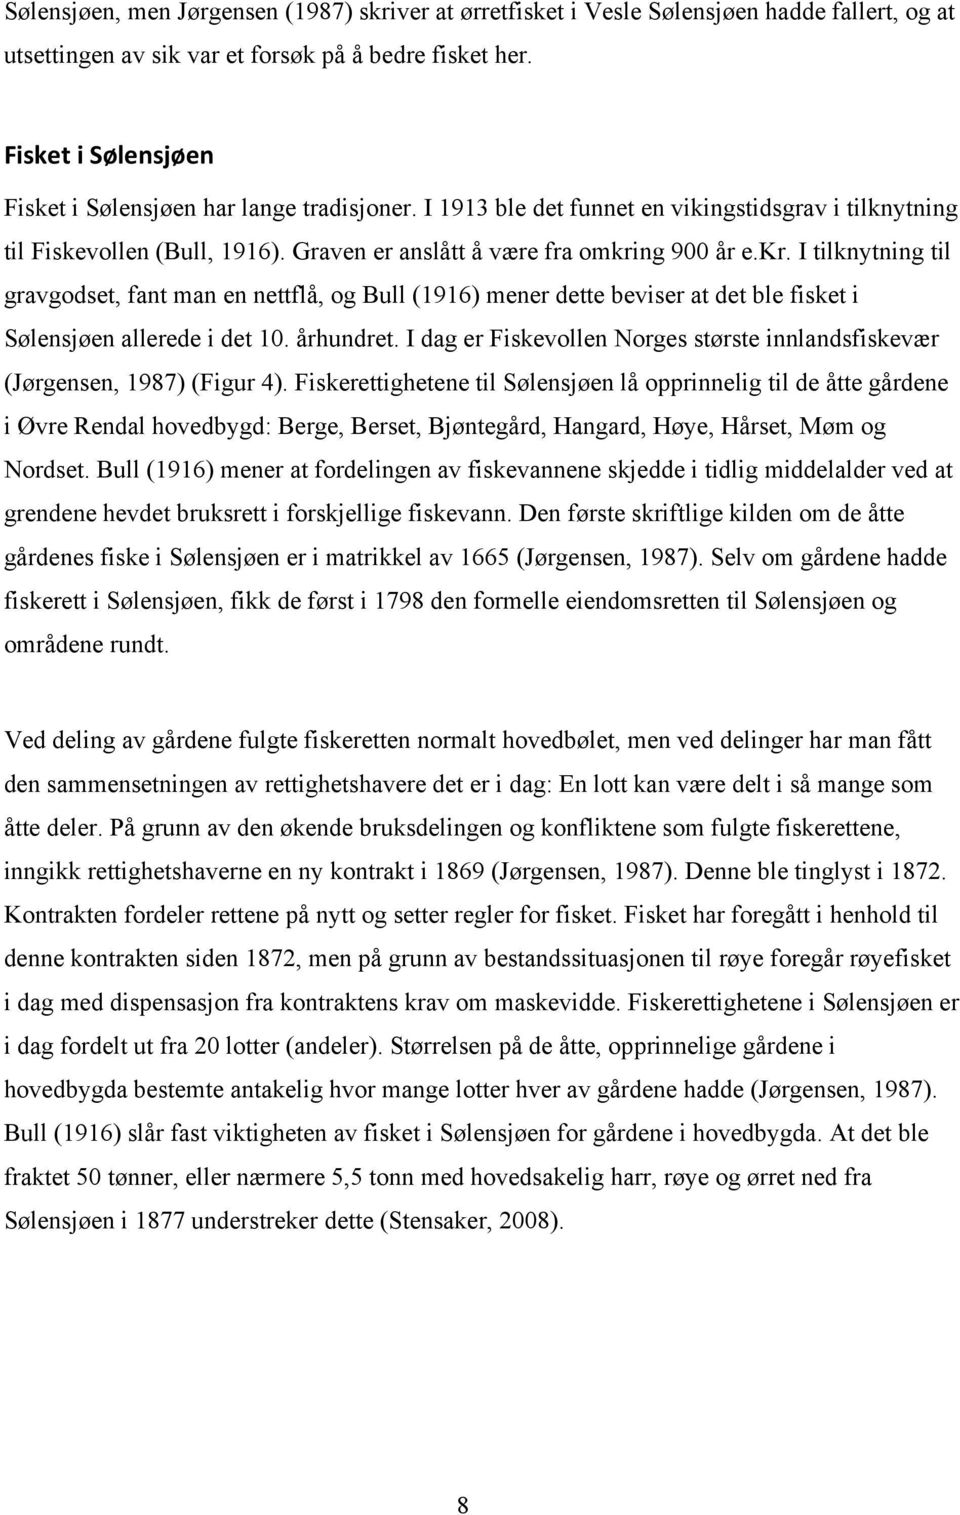 ng 900 år e.kr. I tilknytning til gravgodset, fant man en nettflå, og Bull (1916) mener dette beviser at det ble fisket i Sølensjøen allerede i det 10. århundret.